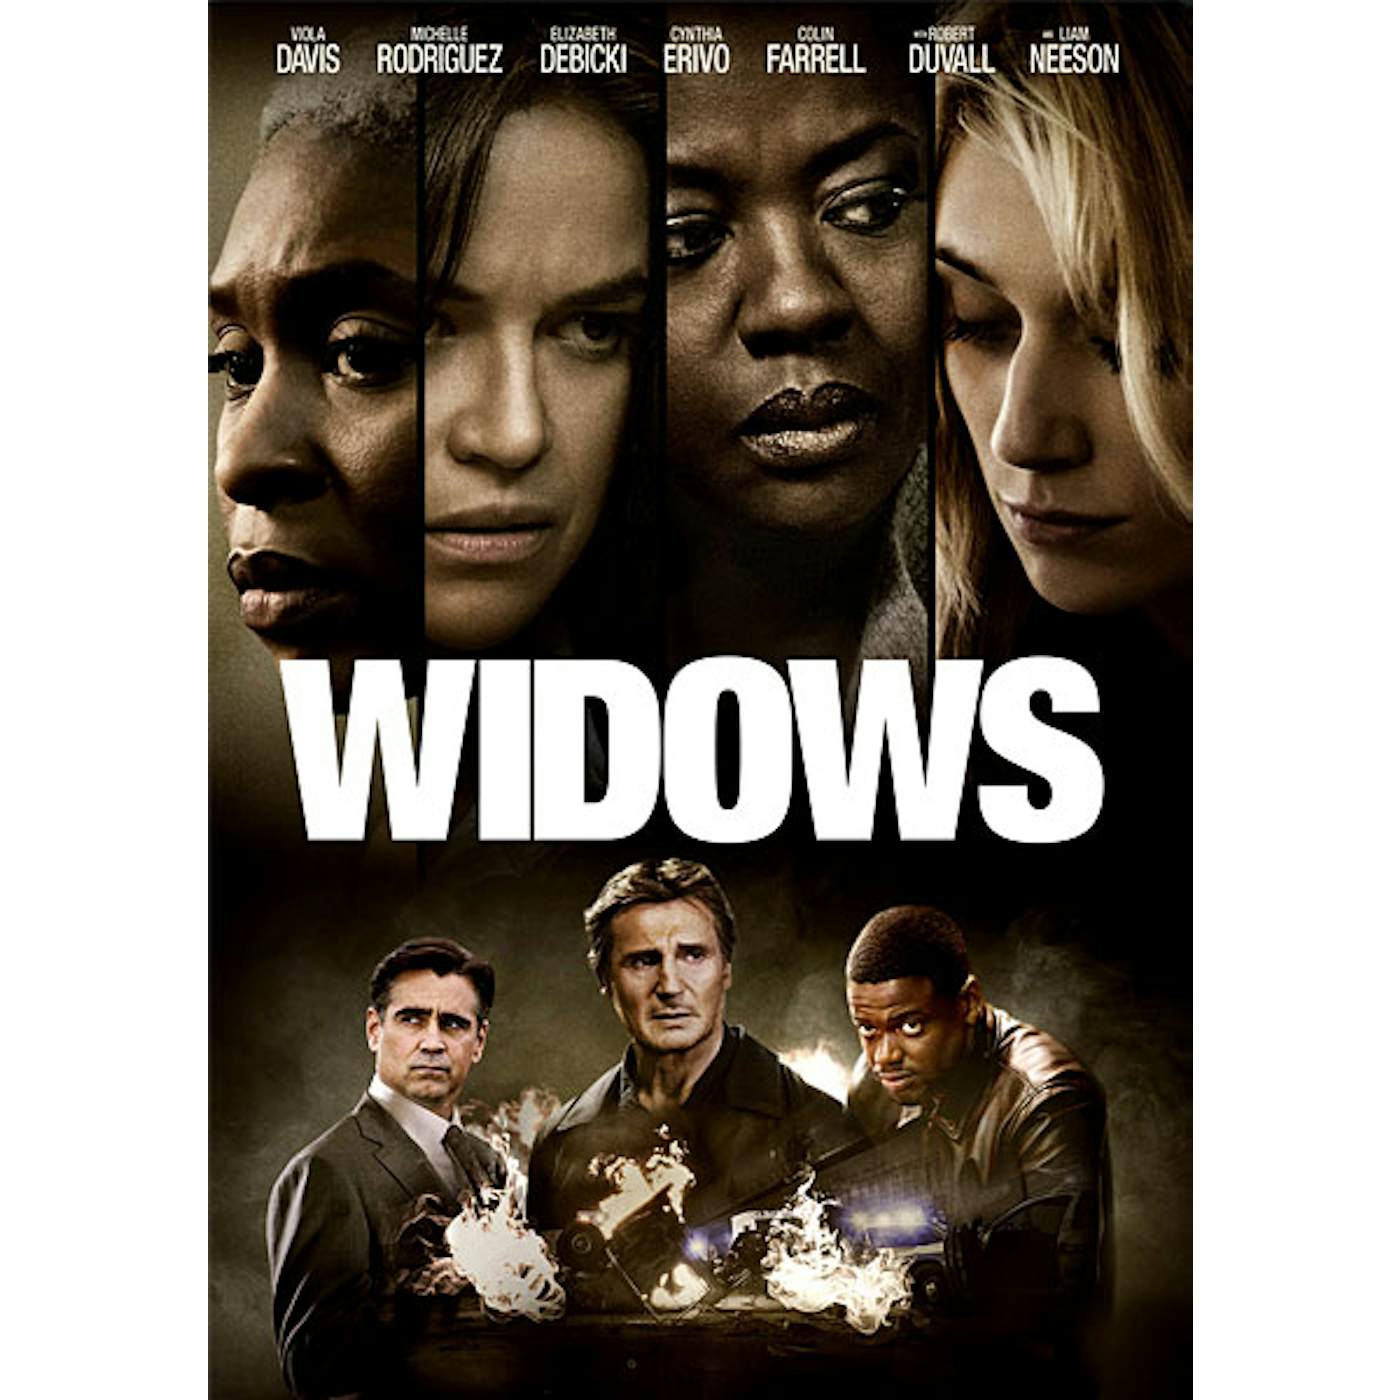 WIDOWS DVD